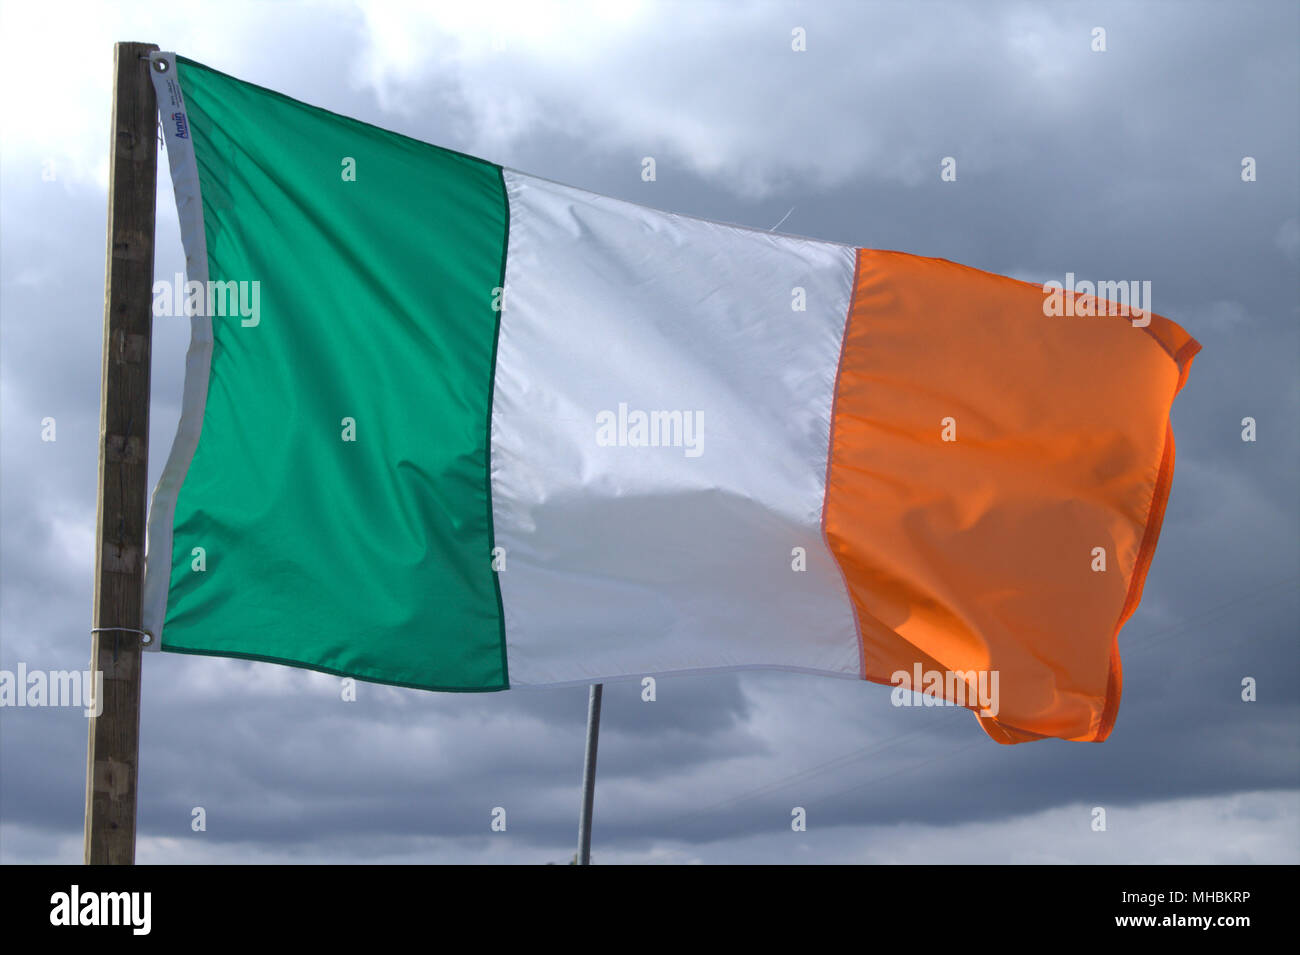 Irland Nationalflagge Tricolour und Stern der Republik Irland fliegen in einem steifen Wind gegen einen stürmischen Himmel. Stockfoto